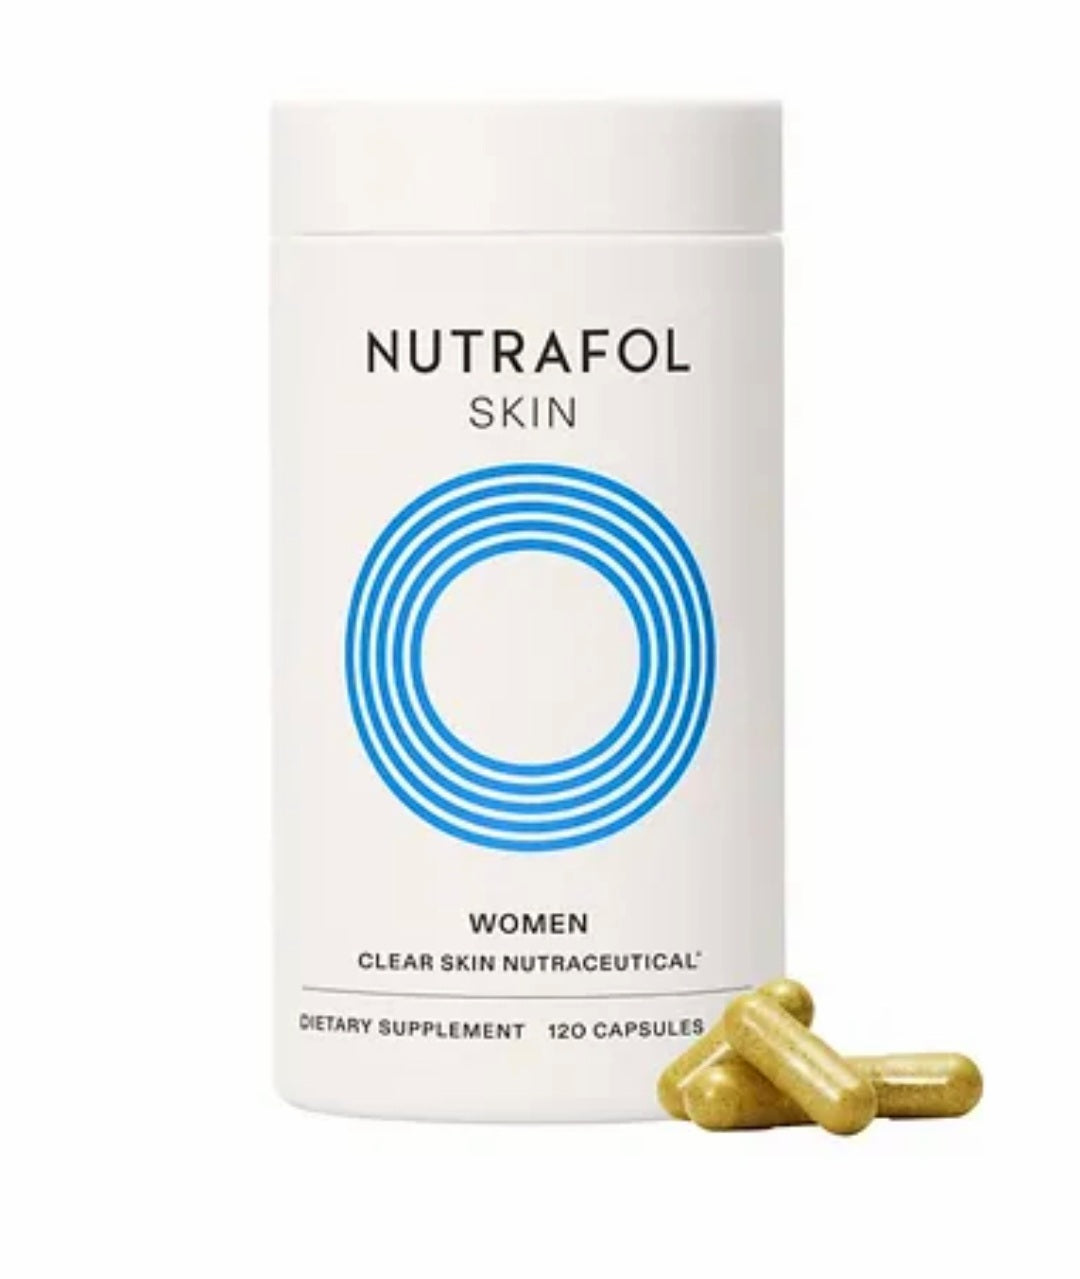 Nutrafol Skin for Women